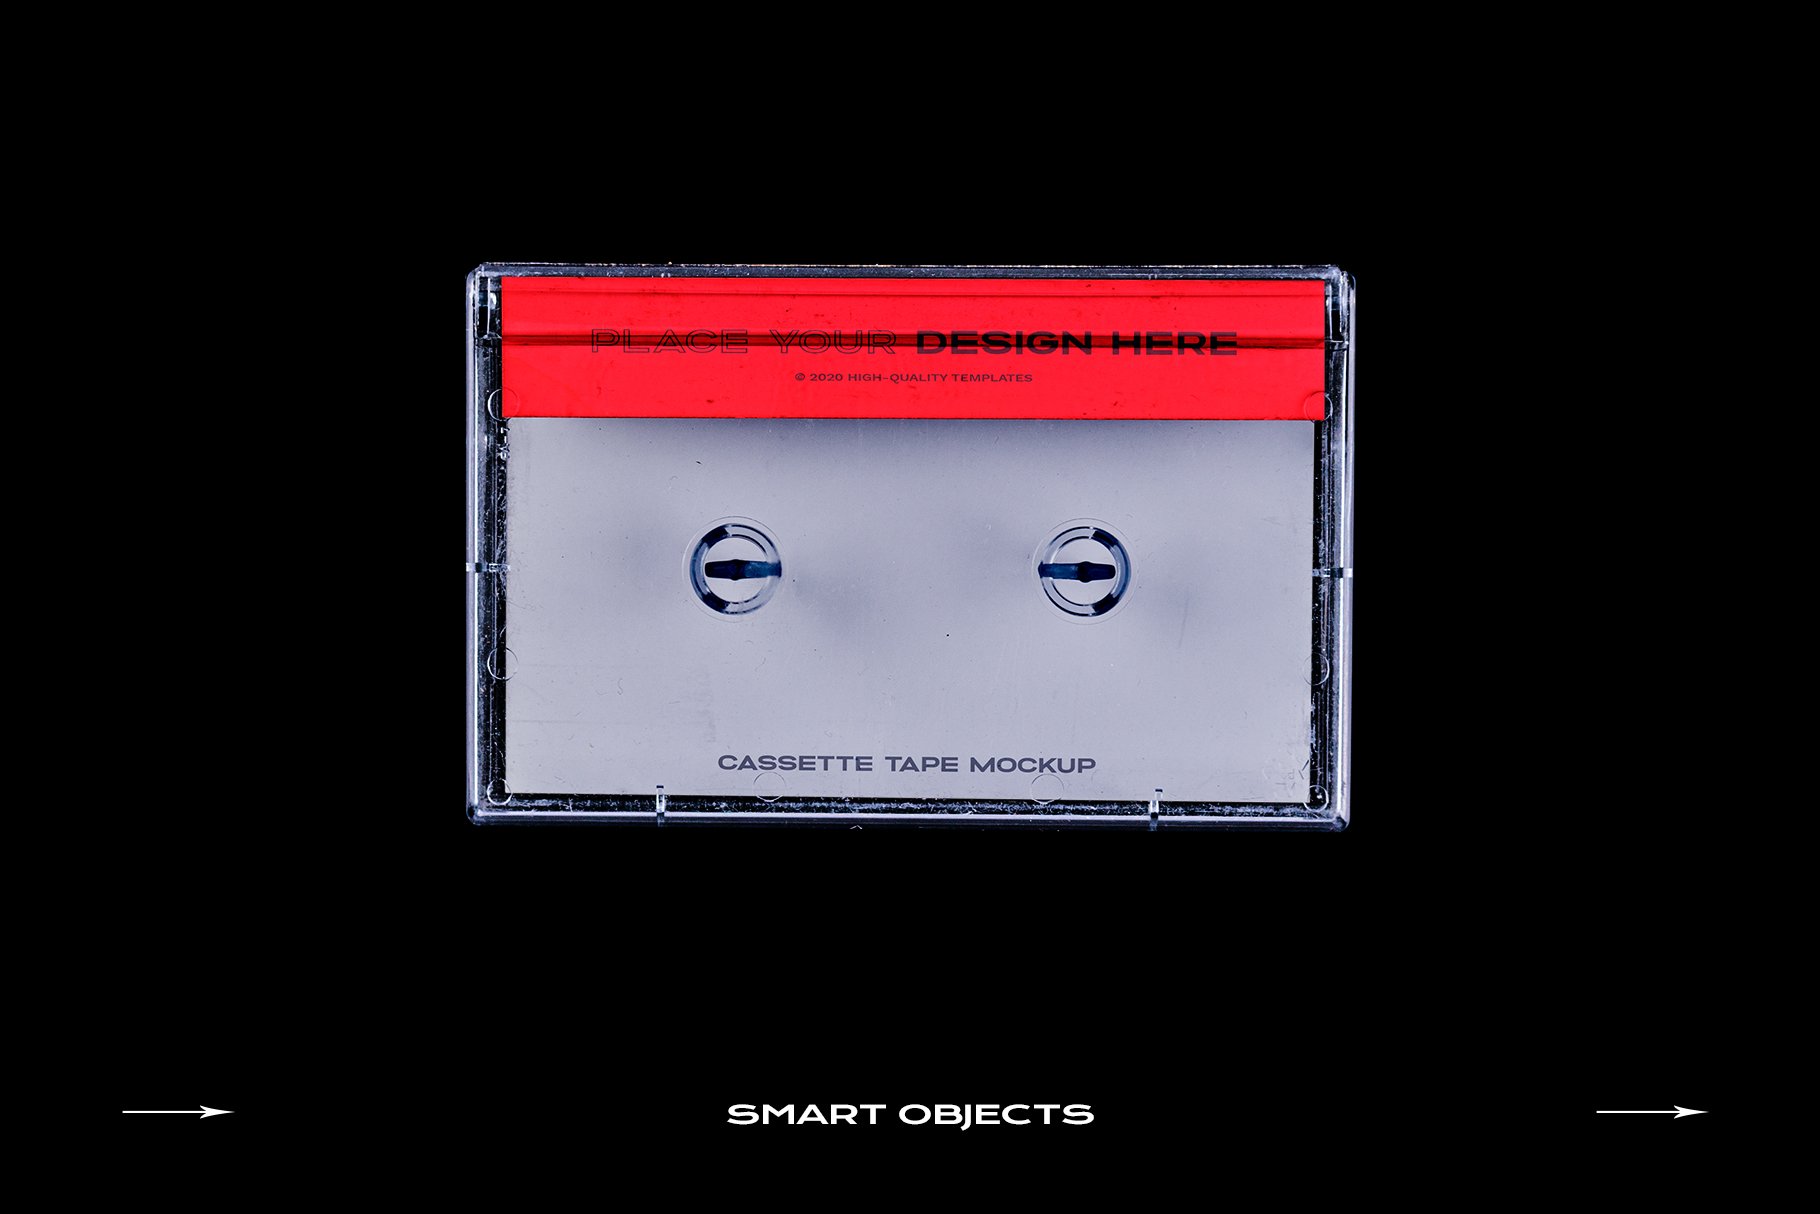 高级潮流复古盒式磁带样机捆绑塑料PSD模板 Cassette Tape Mockup Bundle Plastic（3994）图层云